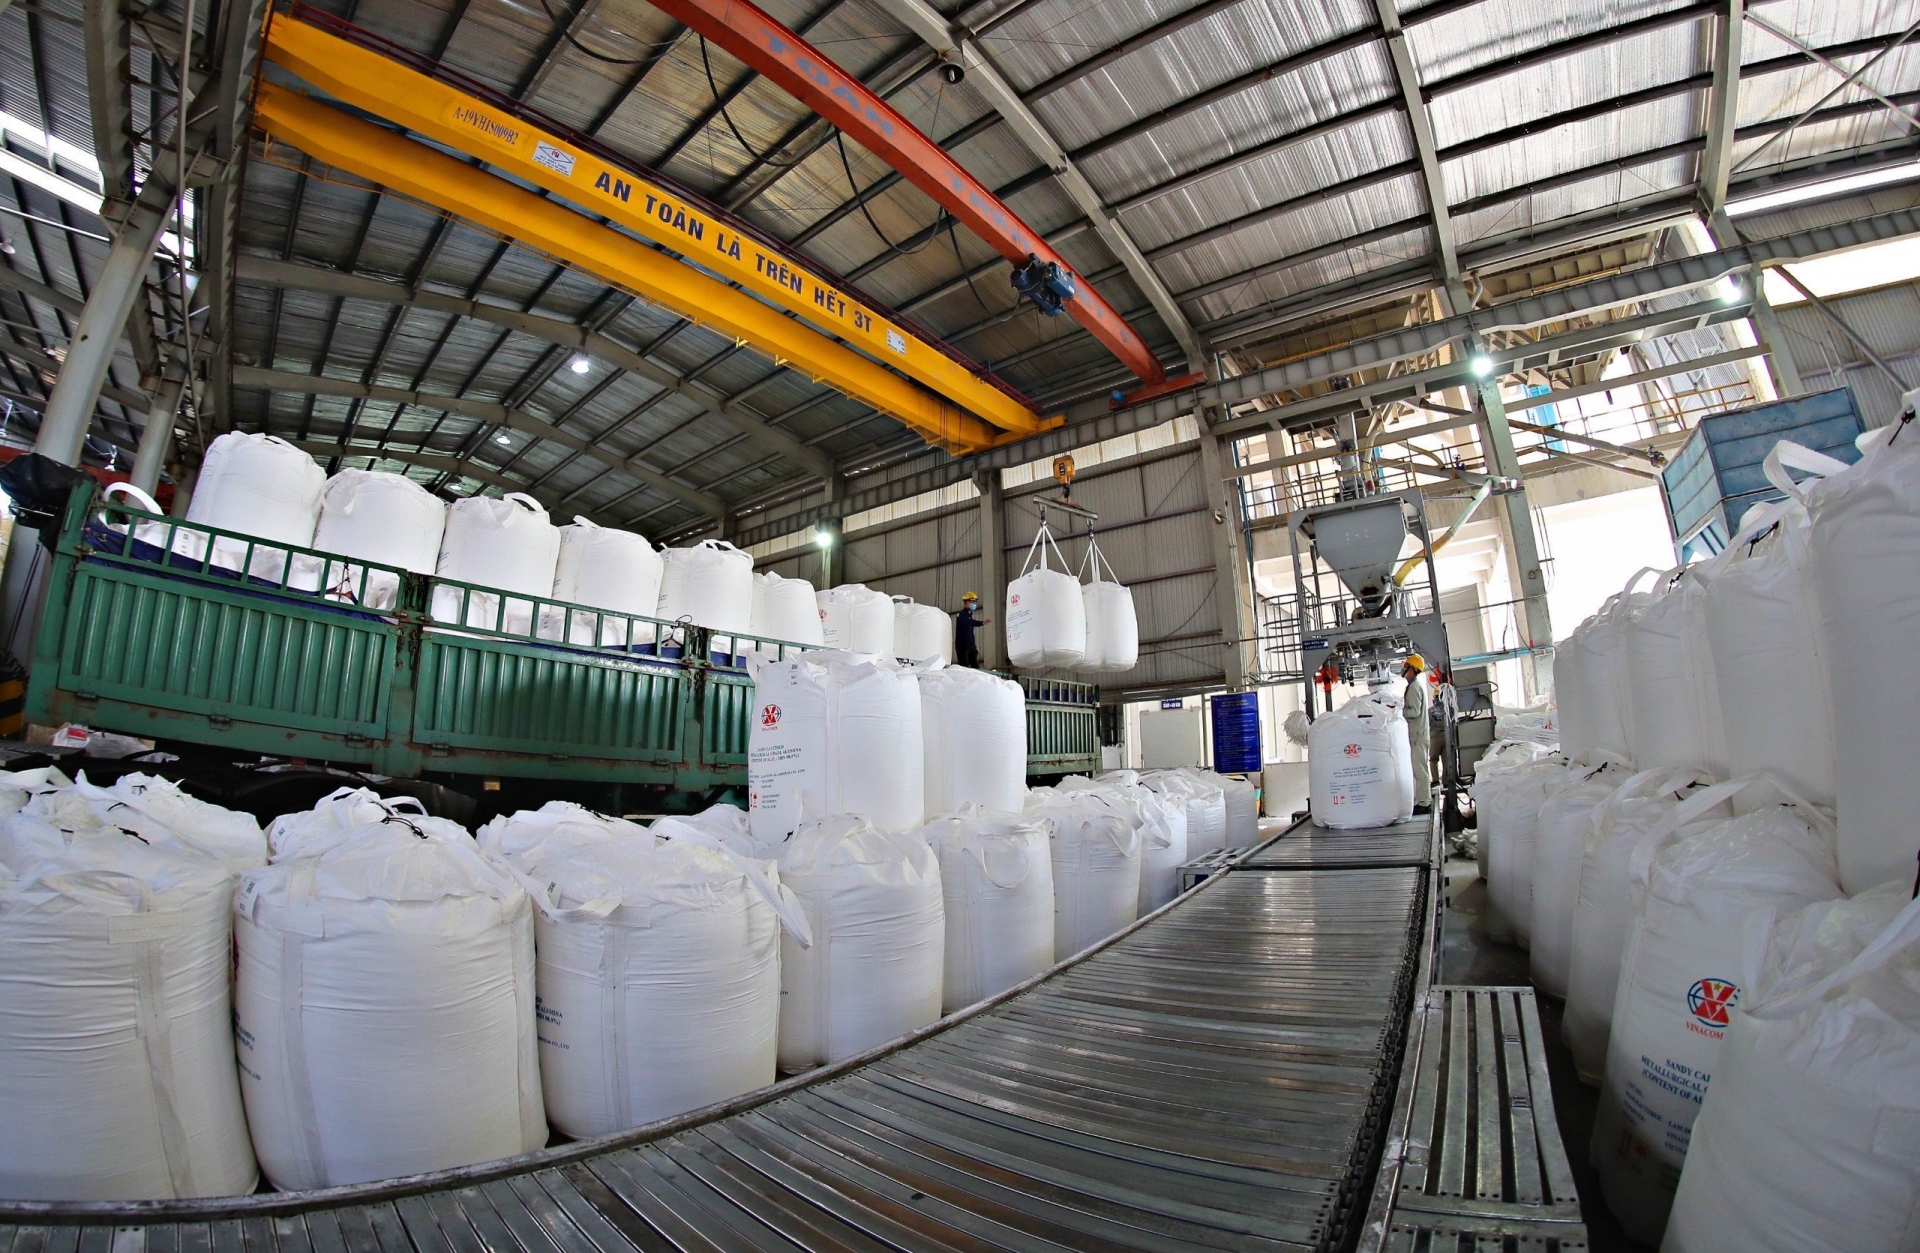 Khu vực đóng gói alumin tại Nhà máy Alumin thuộc Tổ hợp Bô xít - Nhôm Lâm Đồng 